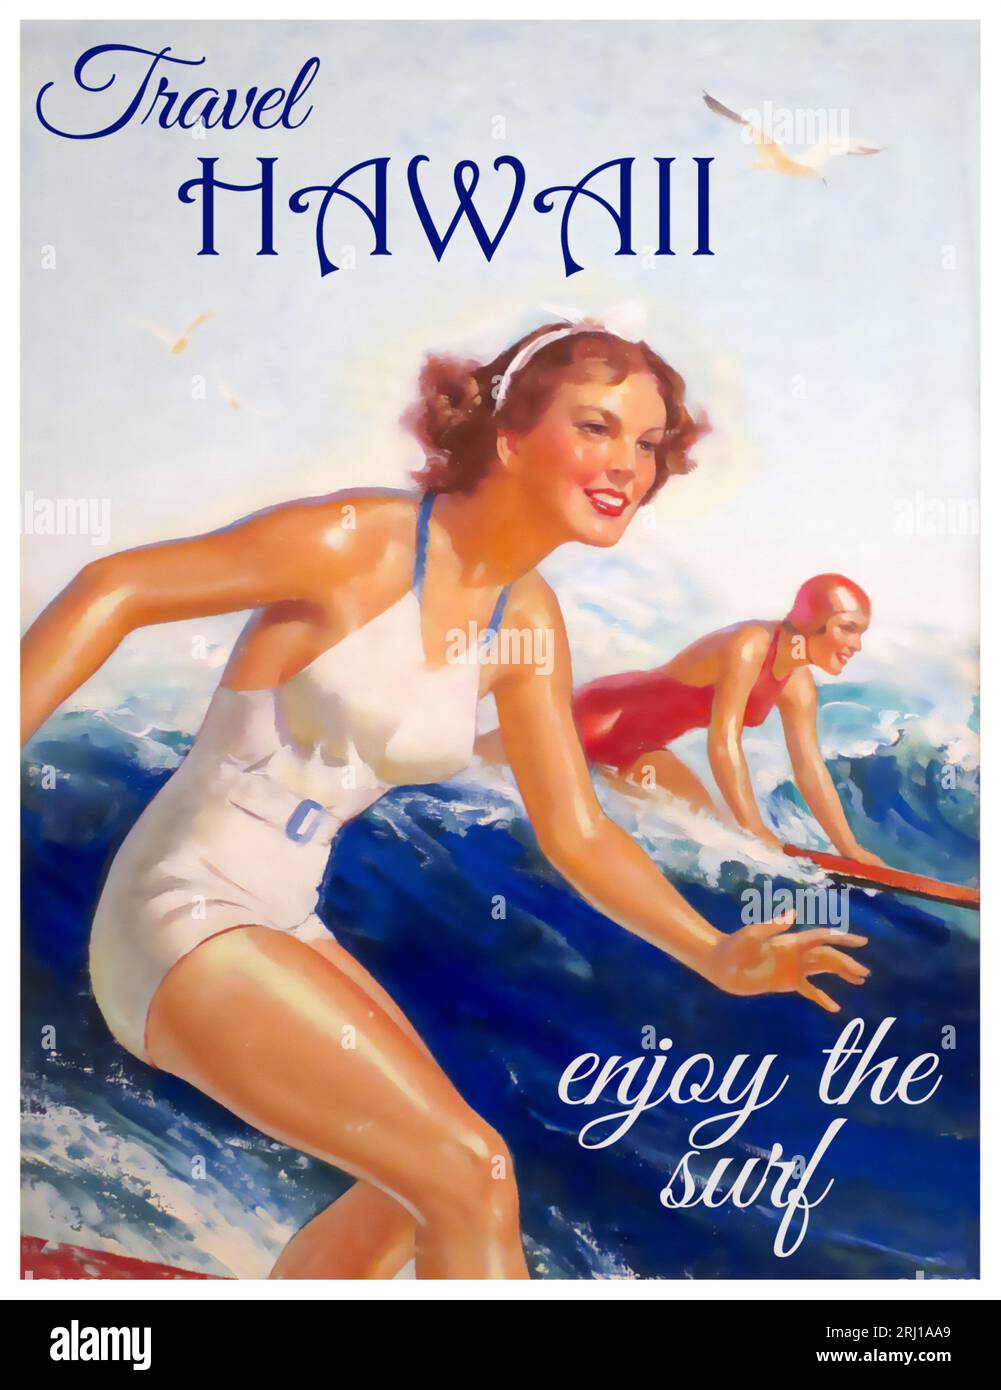 Voyage Hawaï Profitez de l'affiche vintage Surf des années 1950/60 mettant en vedette deux femmes surfant Banque D'Images